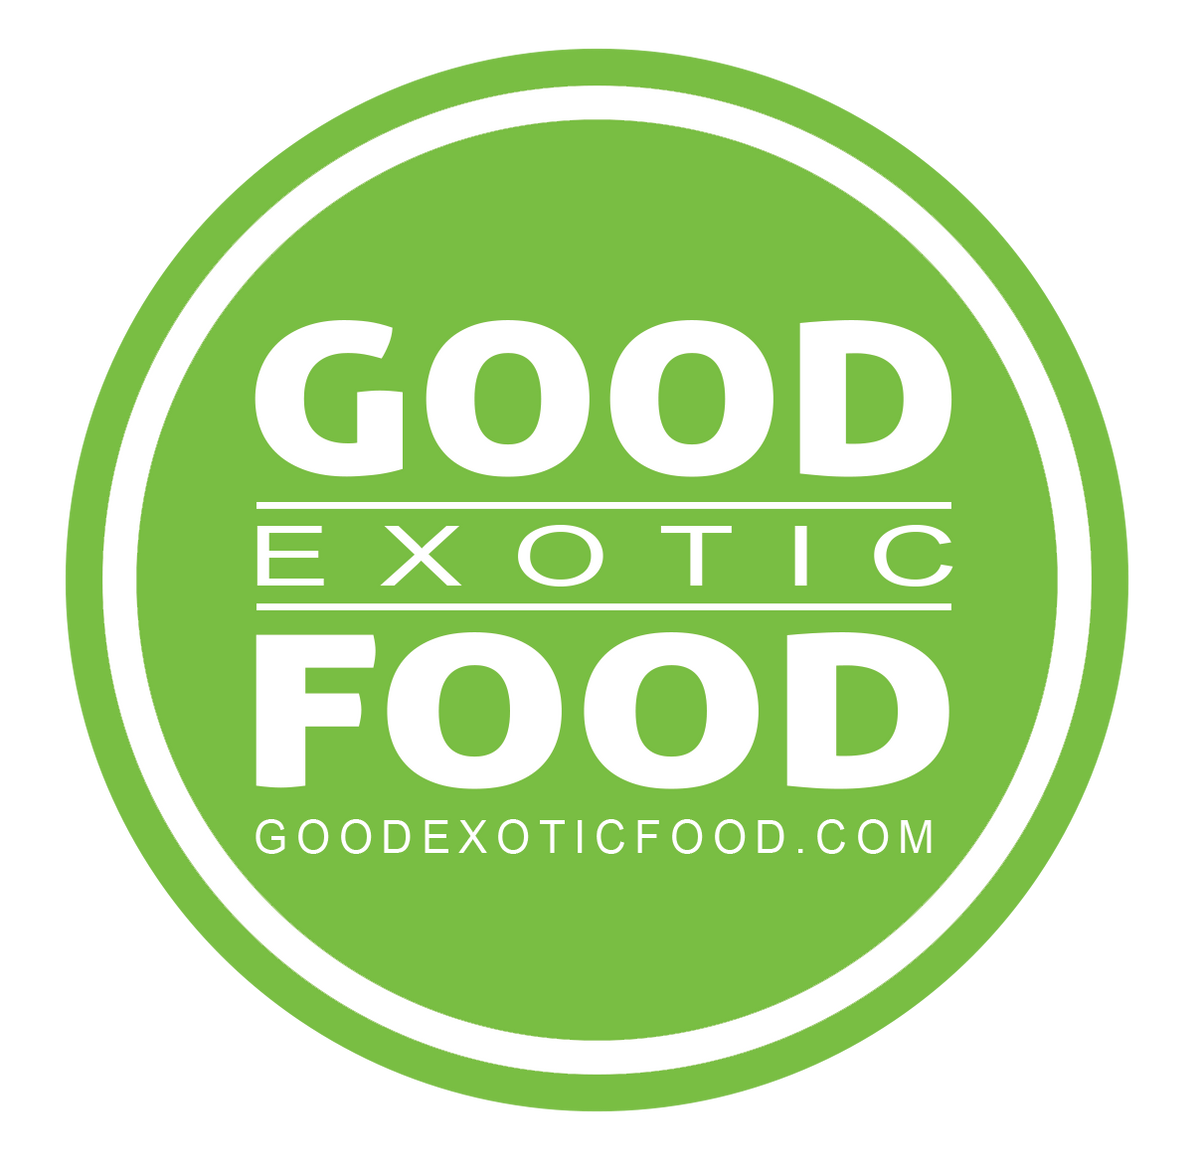 Good Exotic Food | dé online toko | verse exotische ...